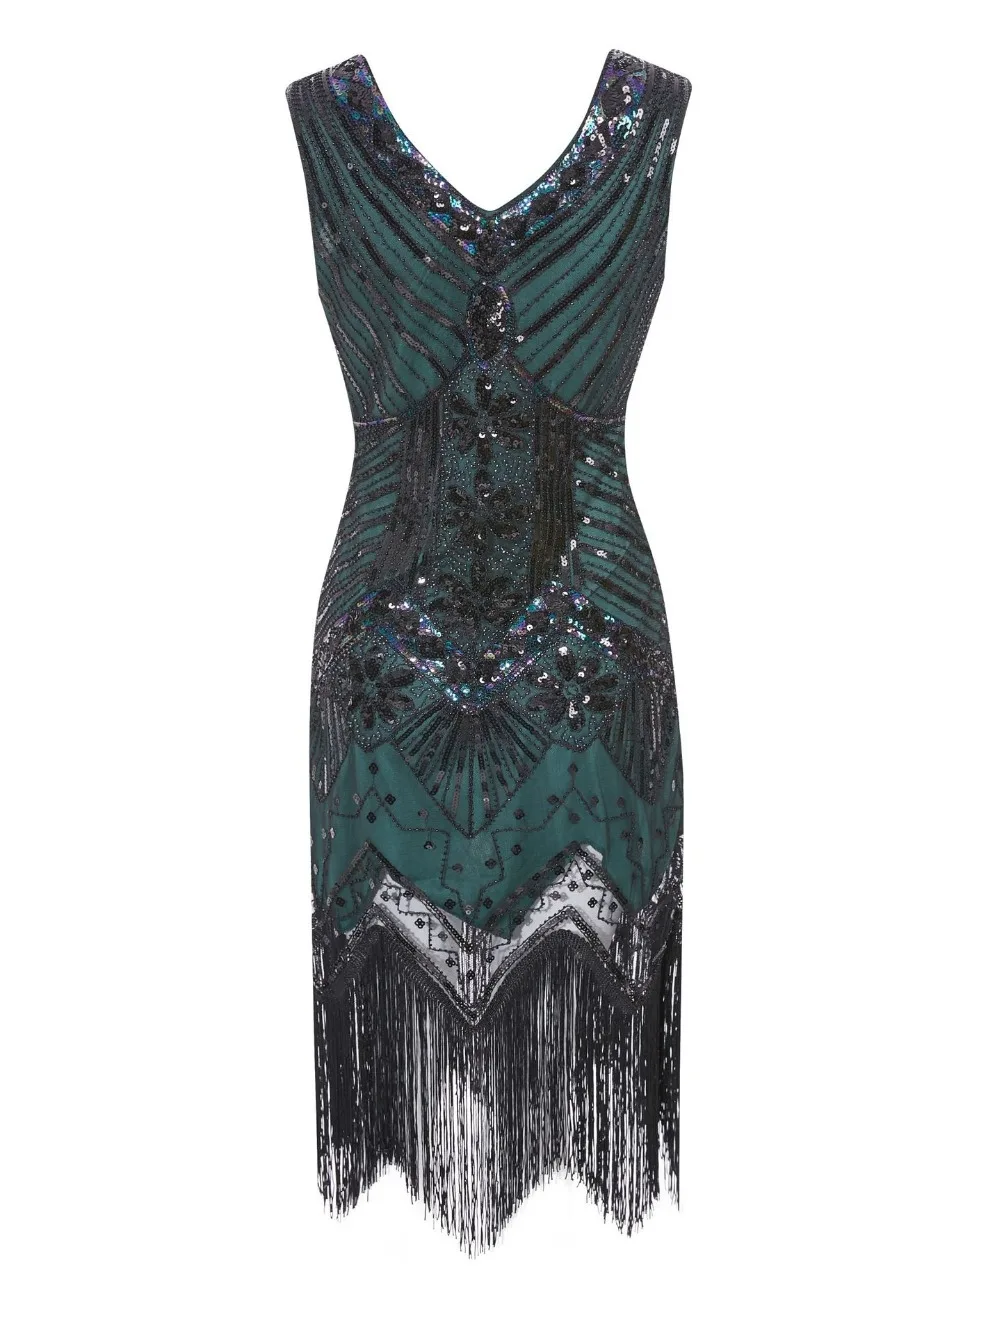 Женское платье для вечеринки, Robe Femme 1920s Great Gatsby, платье миди с блестками и бахромой, летнее платье, Ретро стиль, женское вечернее платье